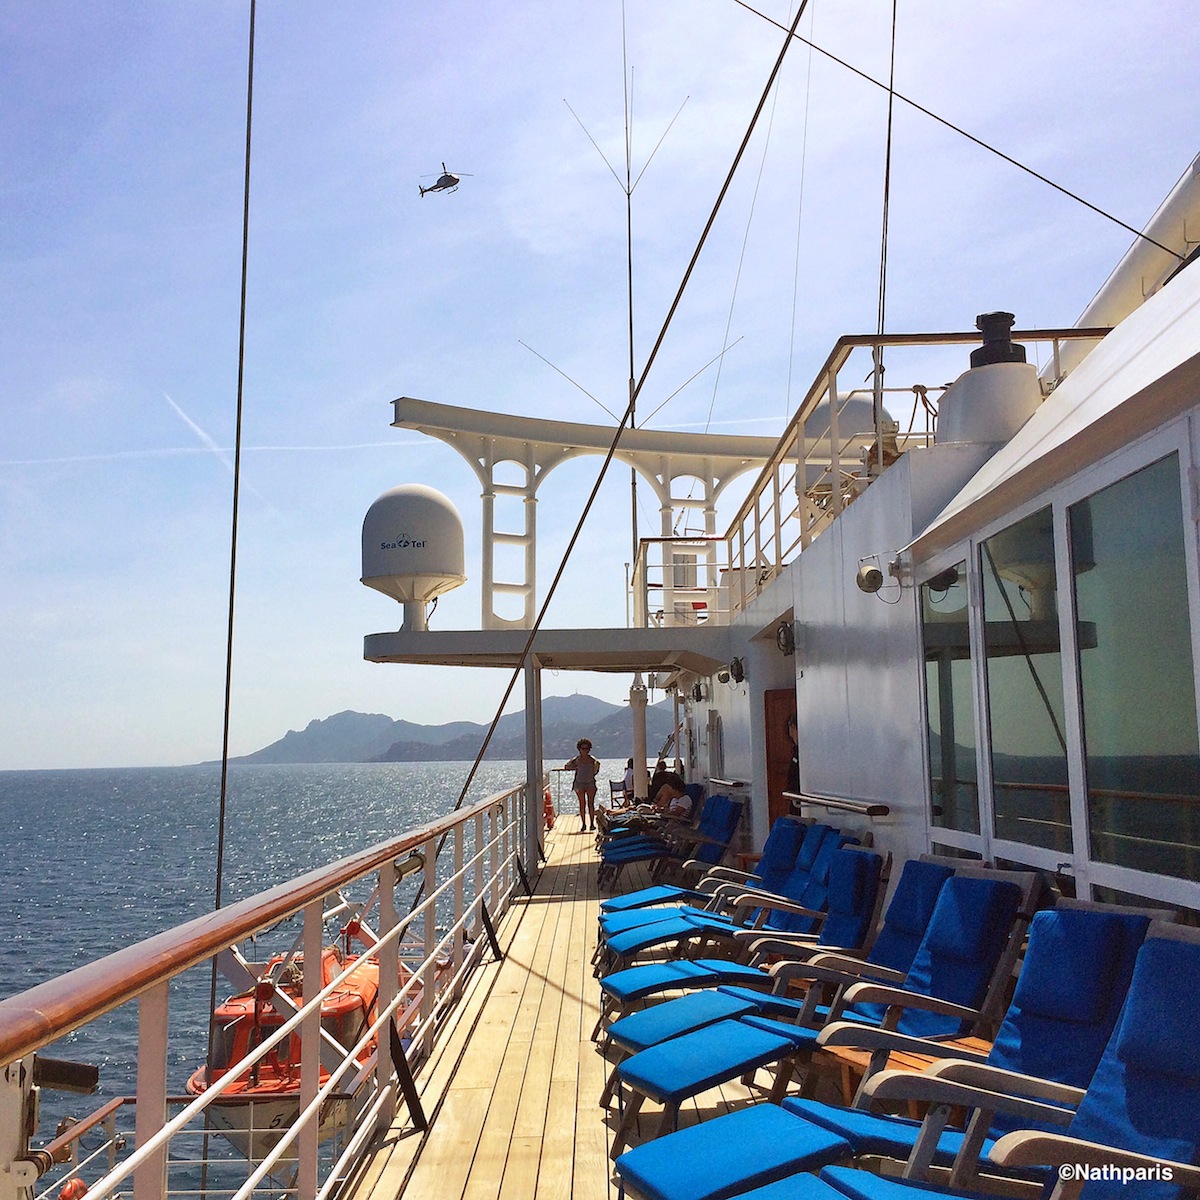 Magnifique journée sur le bateau Villa Schweppes – iPhone5S
Nathalie Geffroy